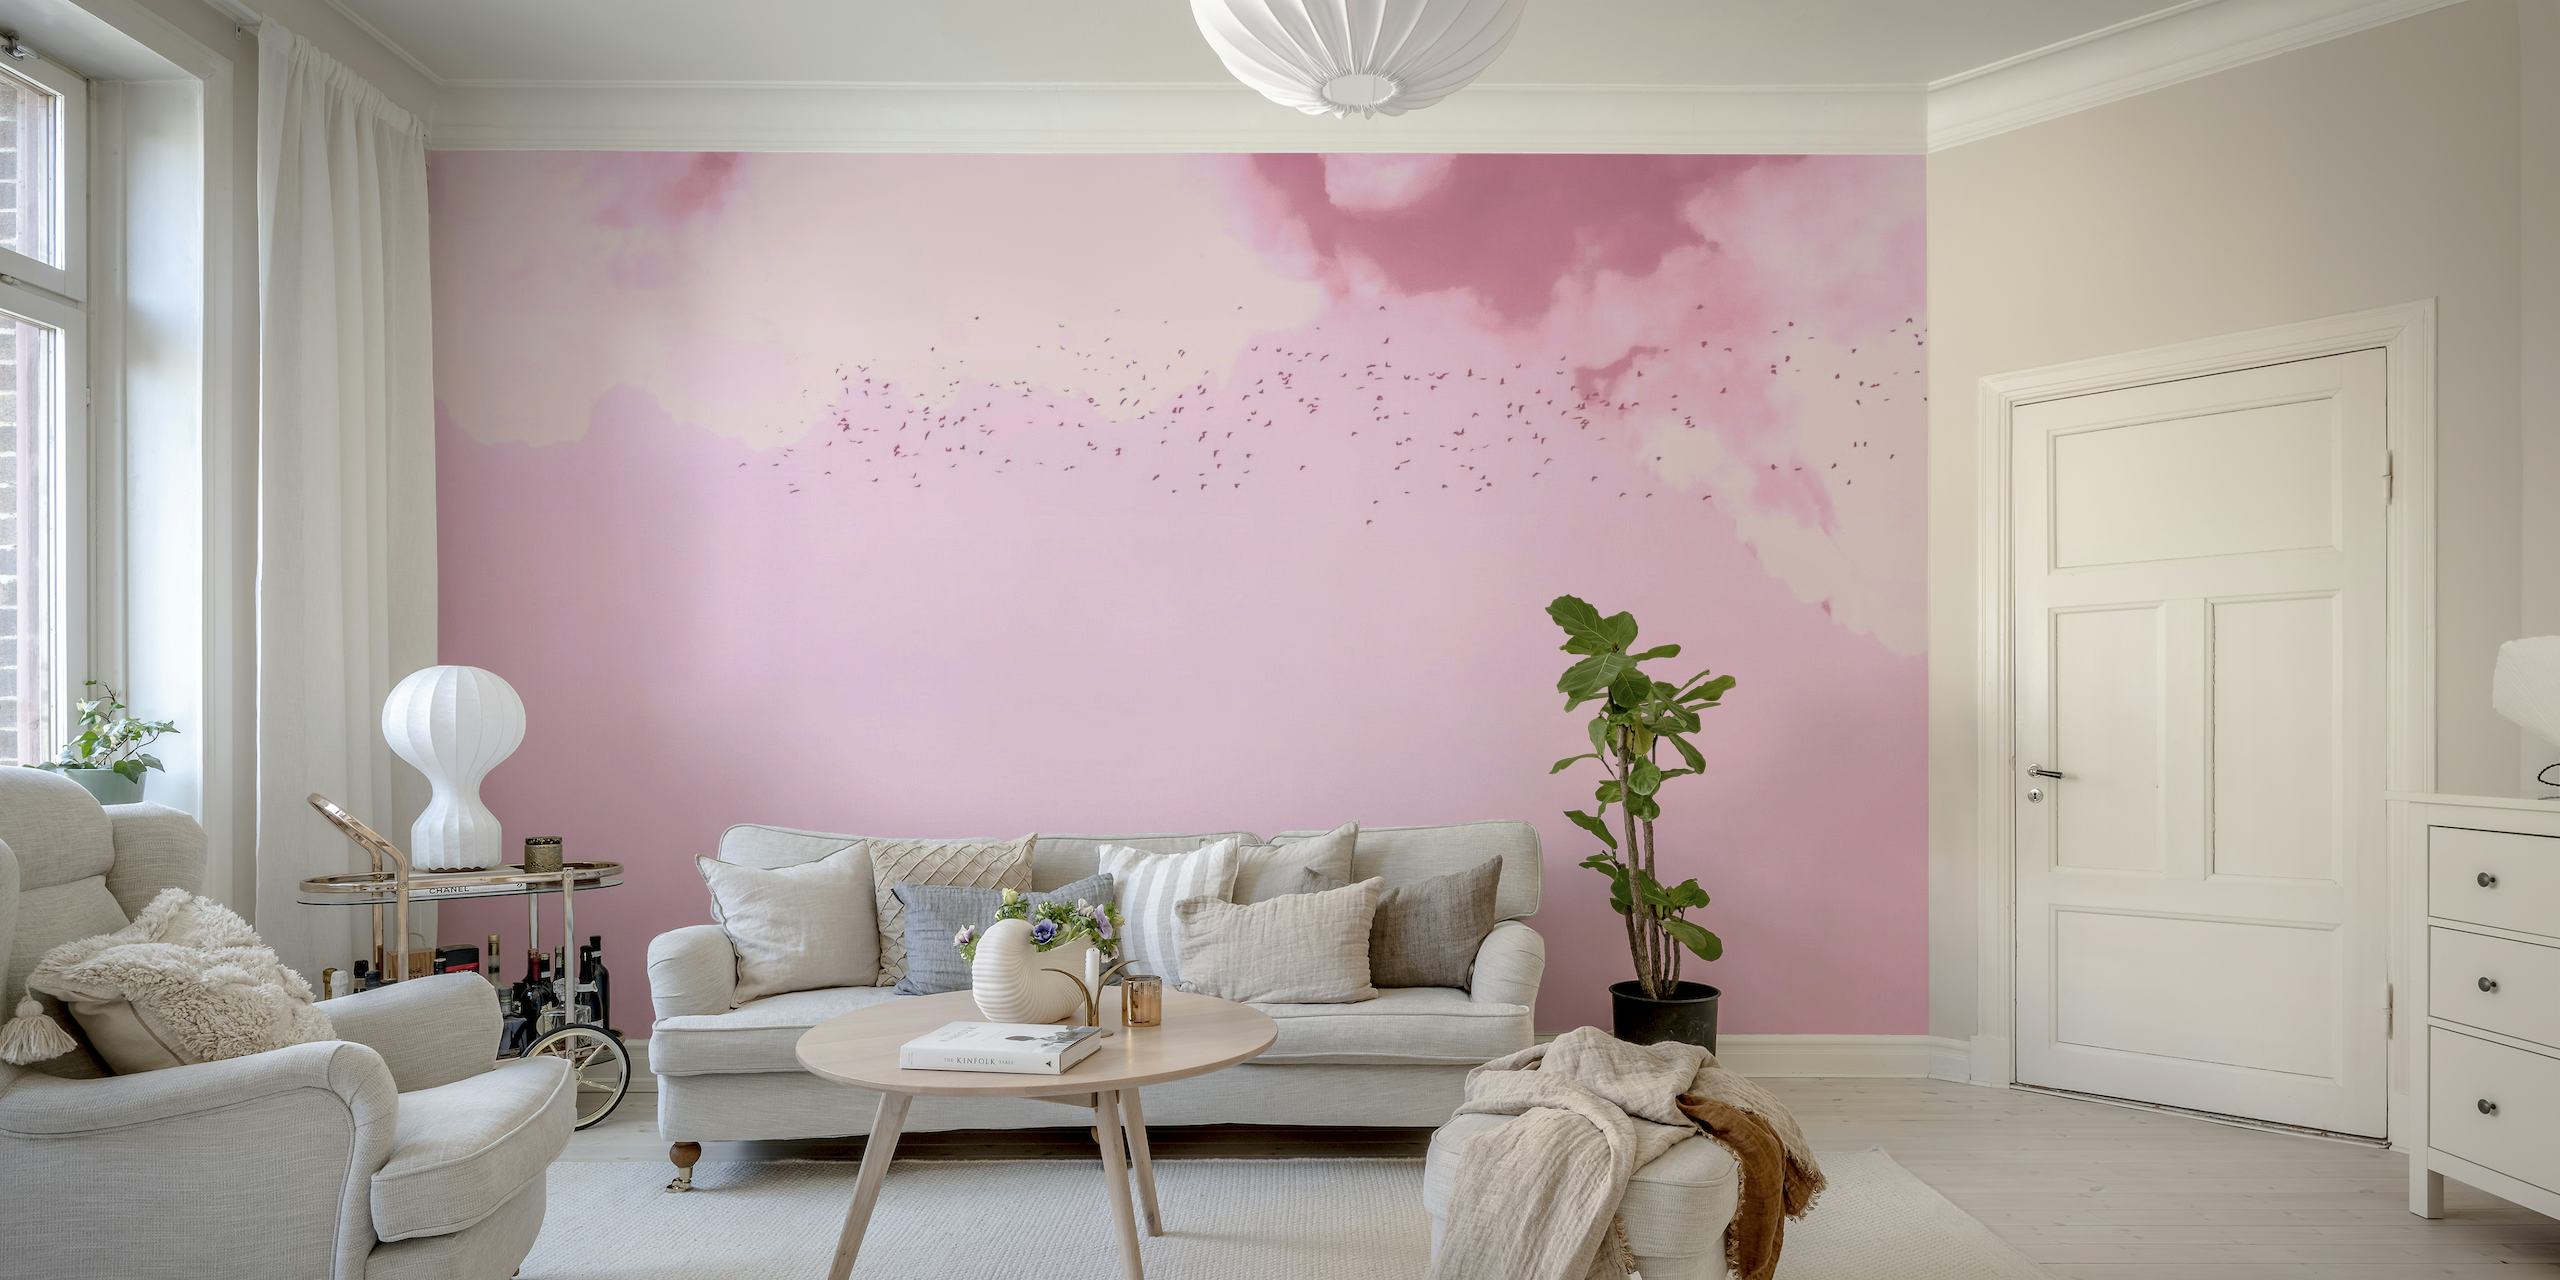 Unenomainen vaaleanpunainen ja magenta seinämaalaus, joka kuvaa lintuja lentämässä pehmeiden pilvien keskellä